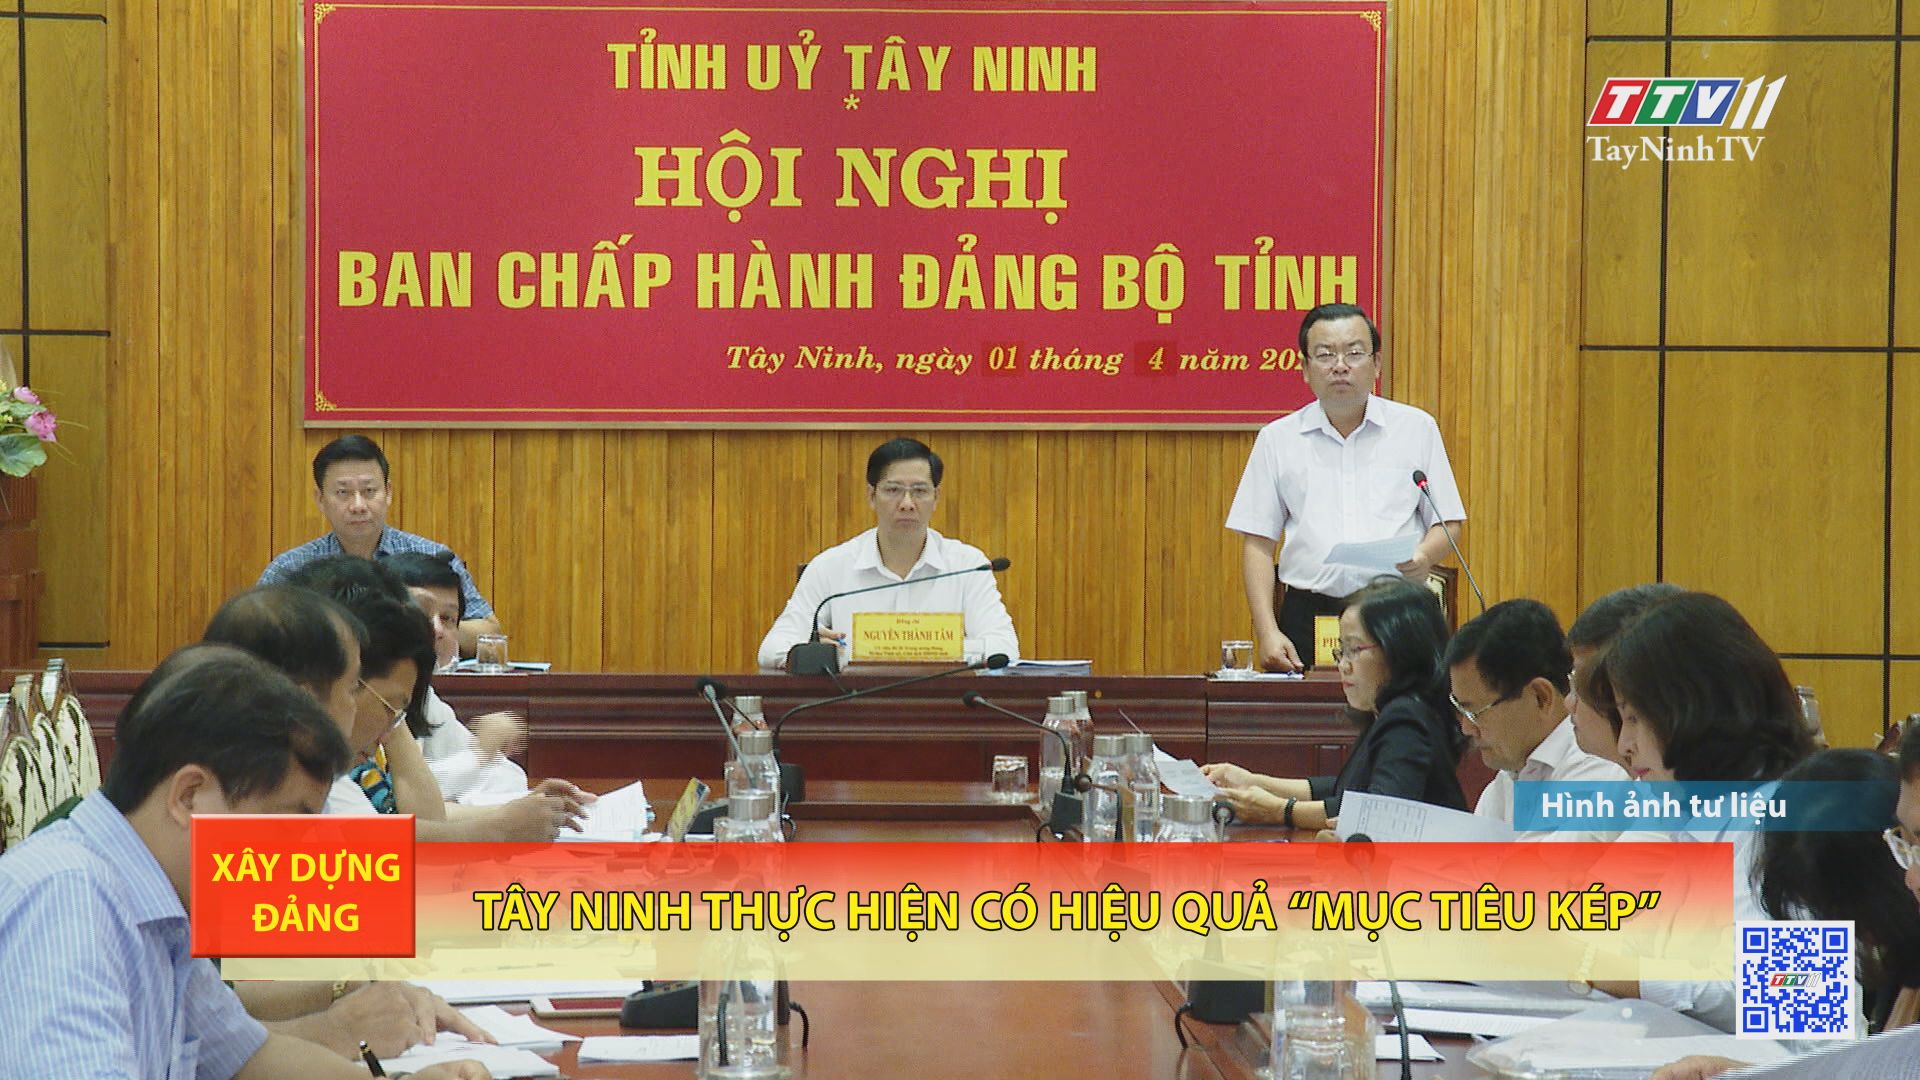 Tây Ninh thực hiện có hiệu quả mục tiêu kép | XÂY DỰNG ĐẢNG | TayNinhTV